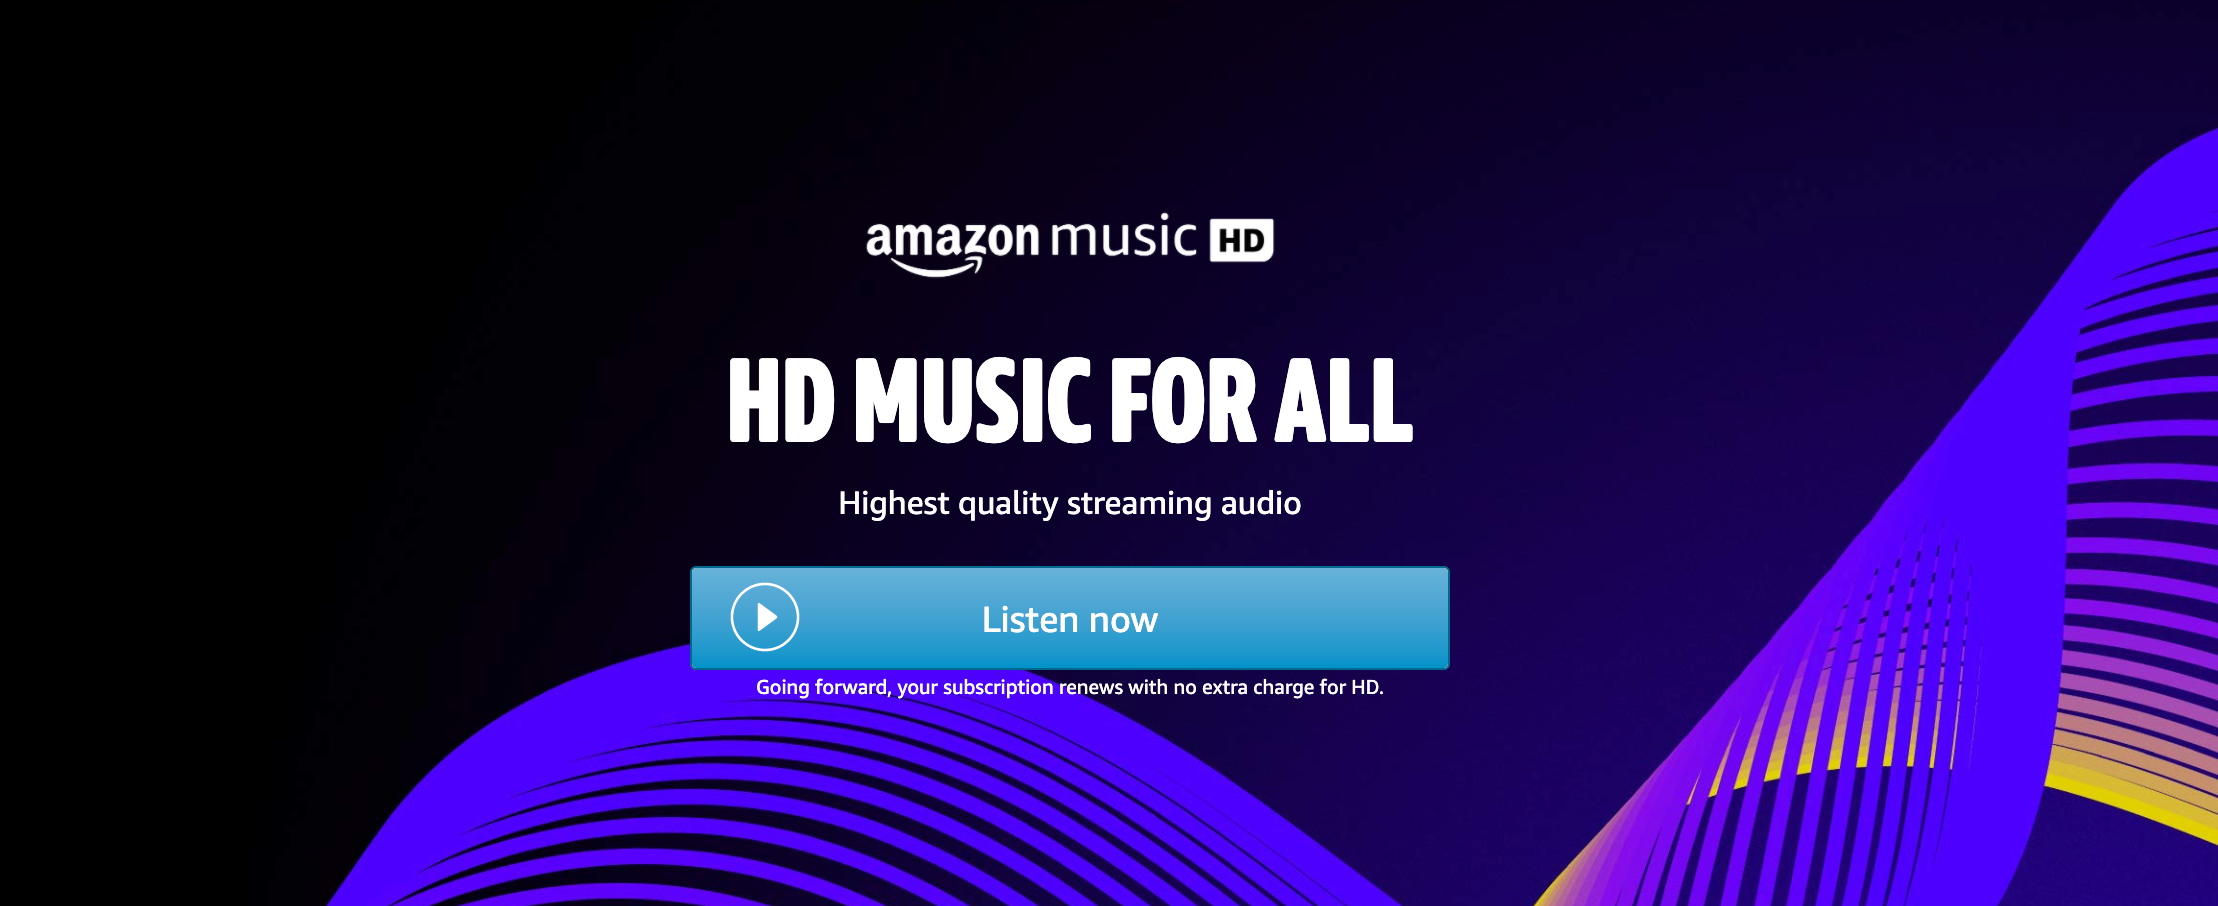 hdmusic for all - Amazon Music HD è ora gratuito per utenti illimitati: cosa significa?